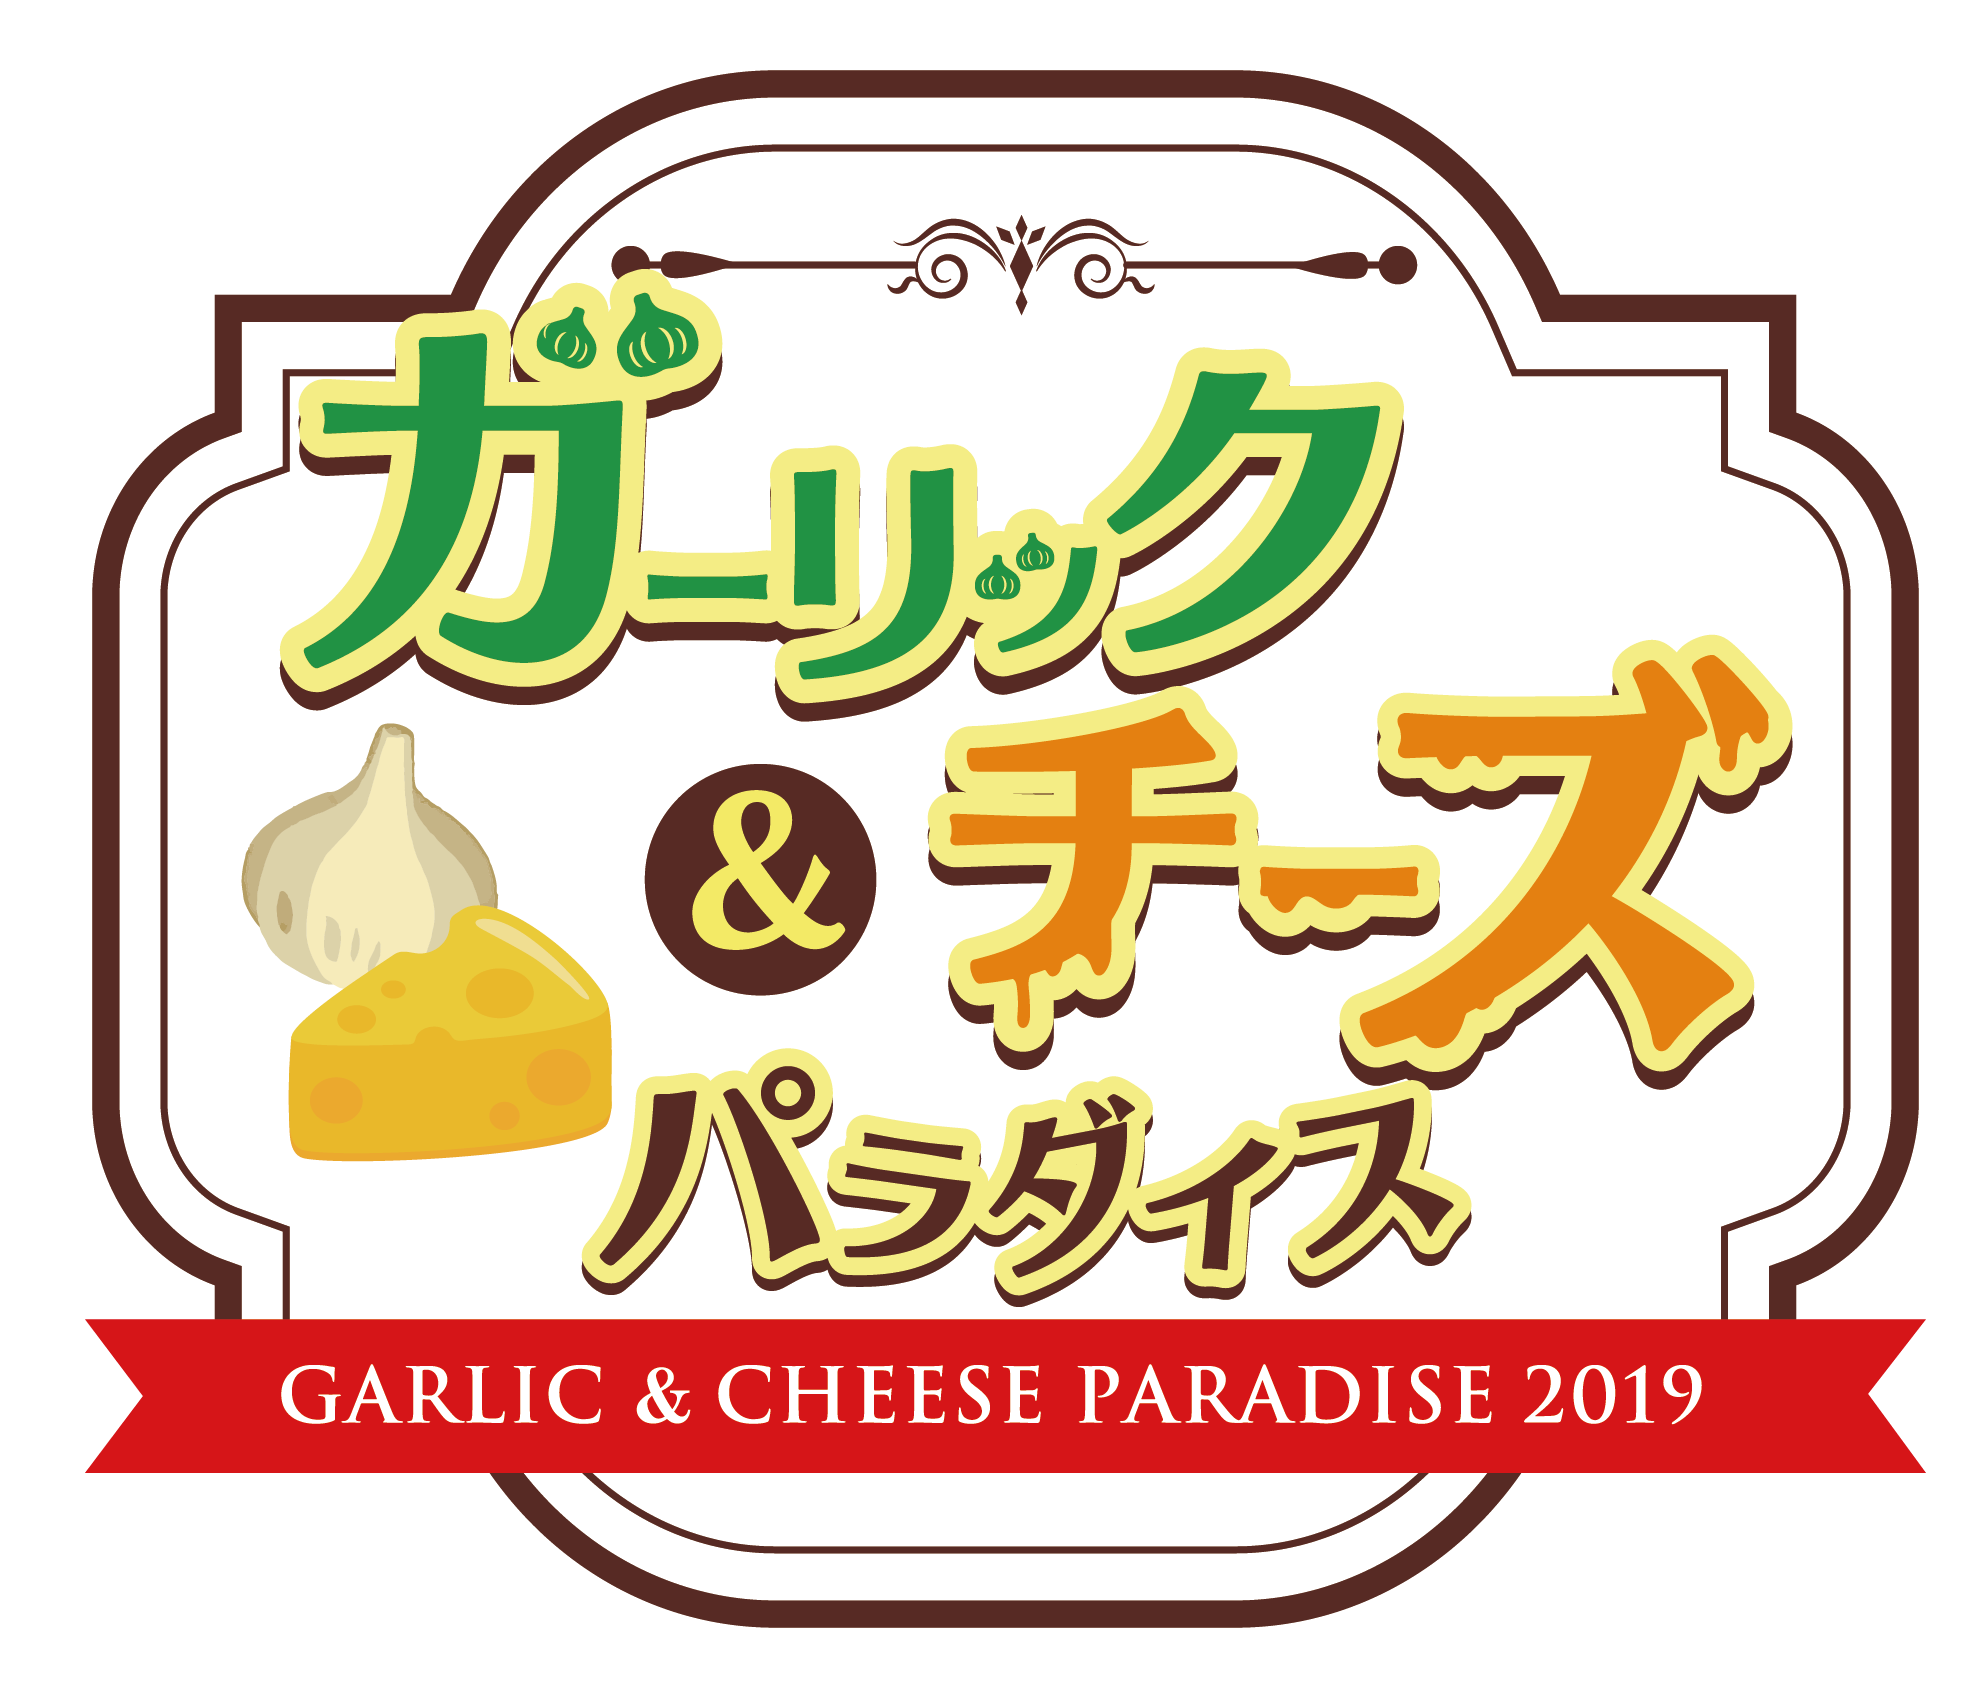 期間限定 新宿歌舞伎町に にんにく料理とチーズ料理 の楽園誕生 にんにくガッツリ 濃厚チーズの楽園 ガーリック チーズパラダイス は9日間だけ Newscast